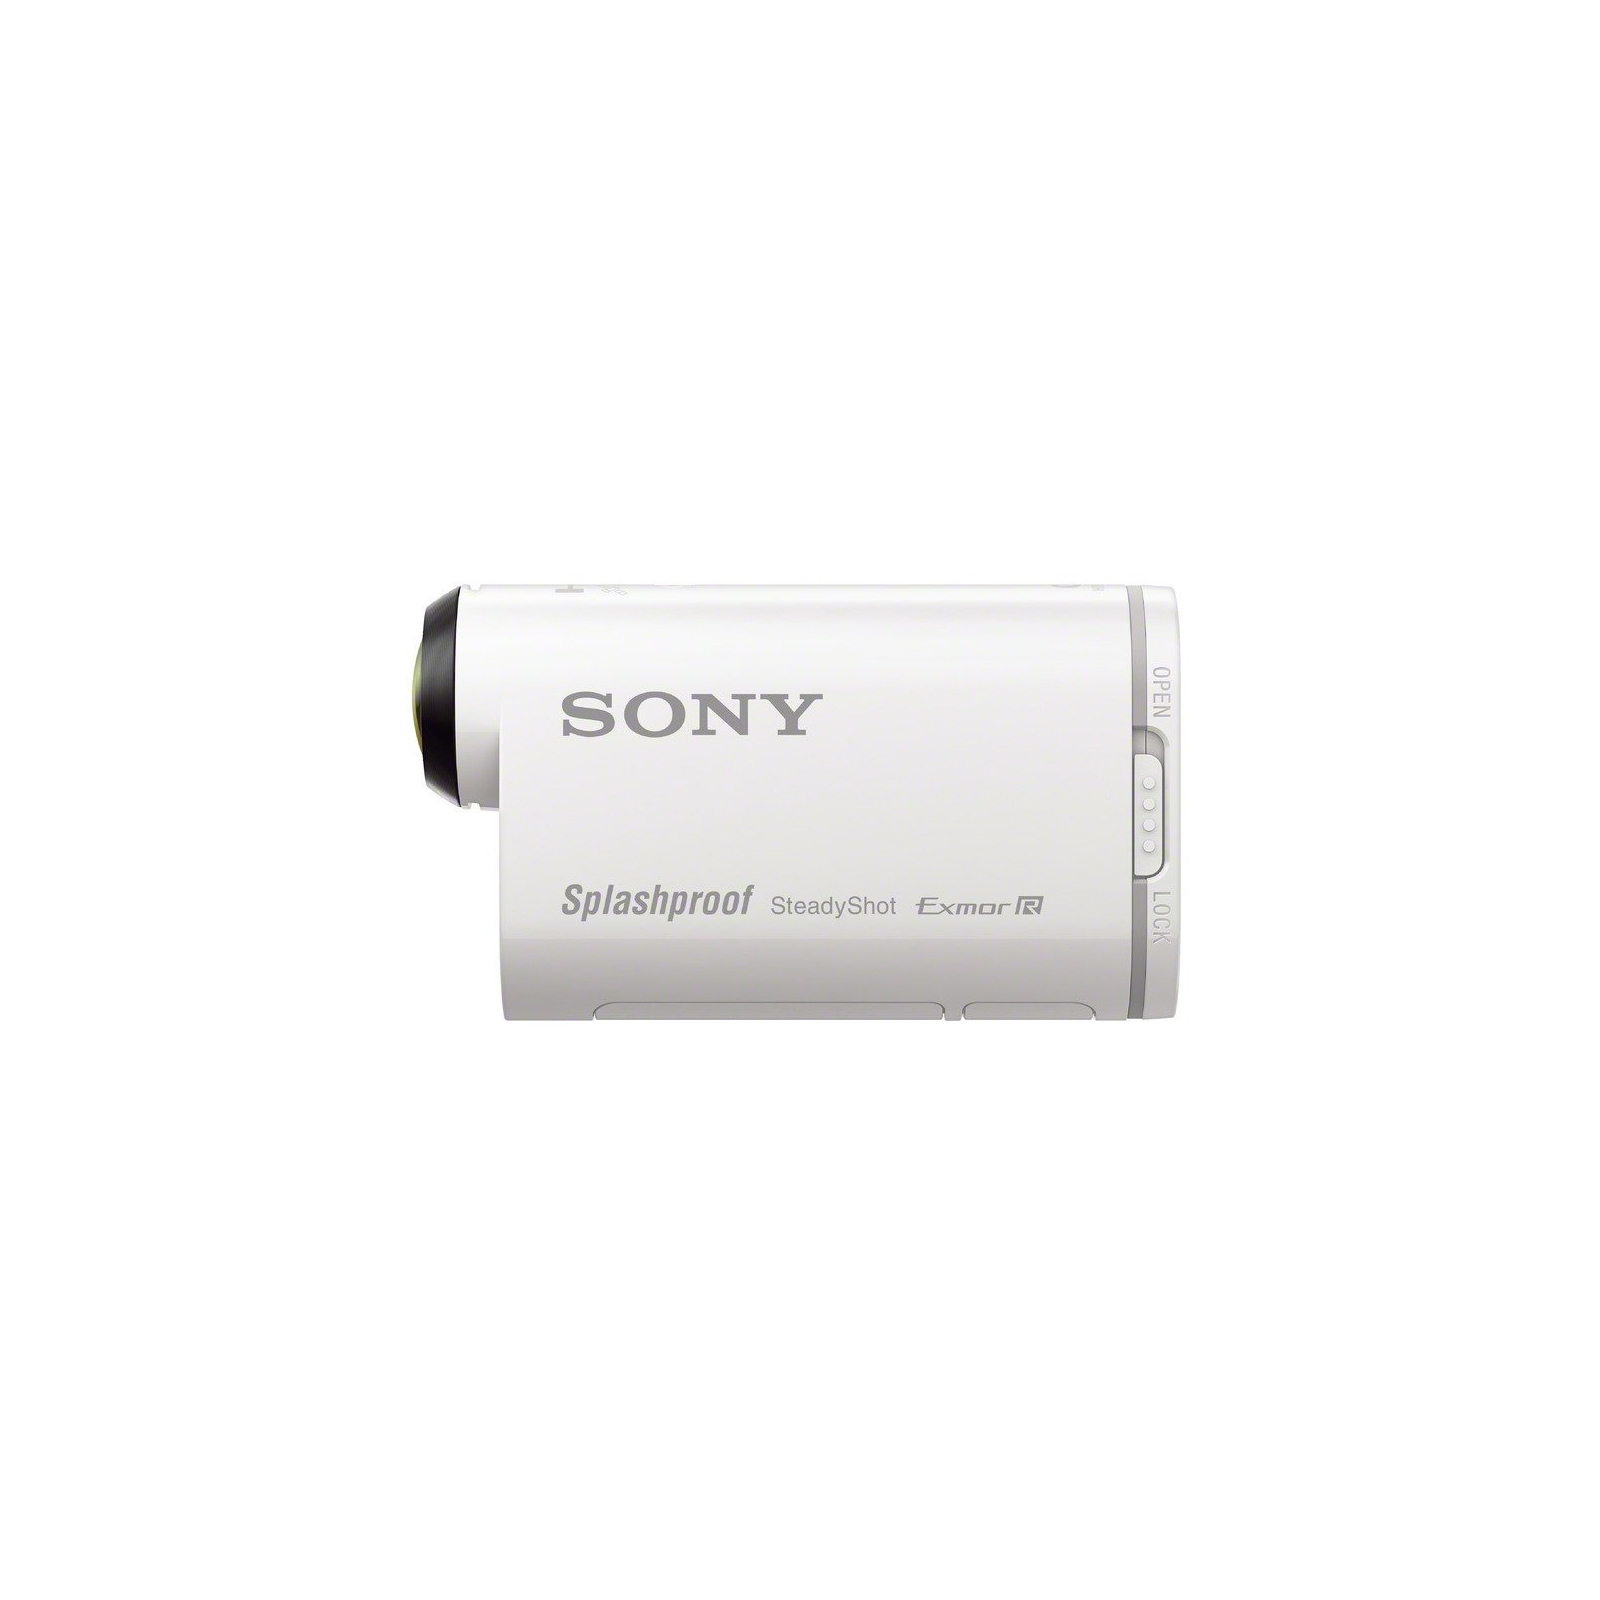 Экшн-камера Sony HDR-AS200V с пультом д/у RM-LVR2 (HDRAS200VR.AU2) изображение 2